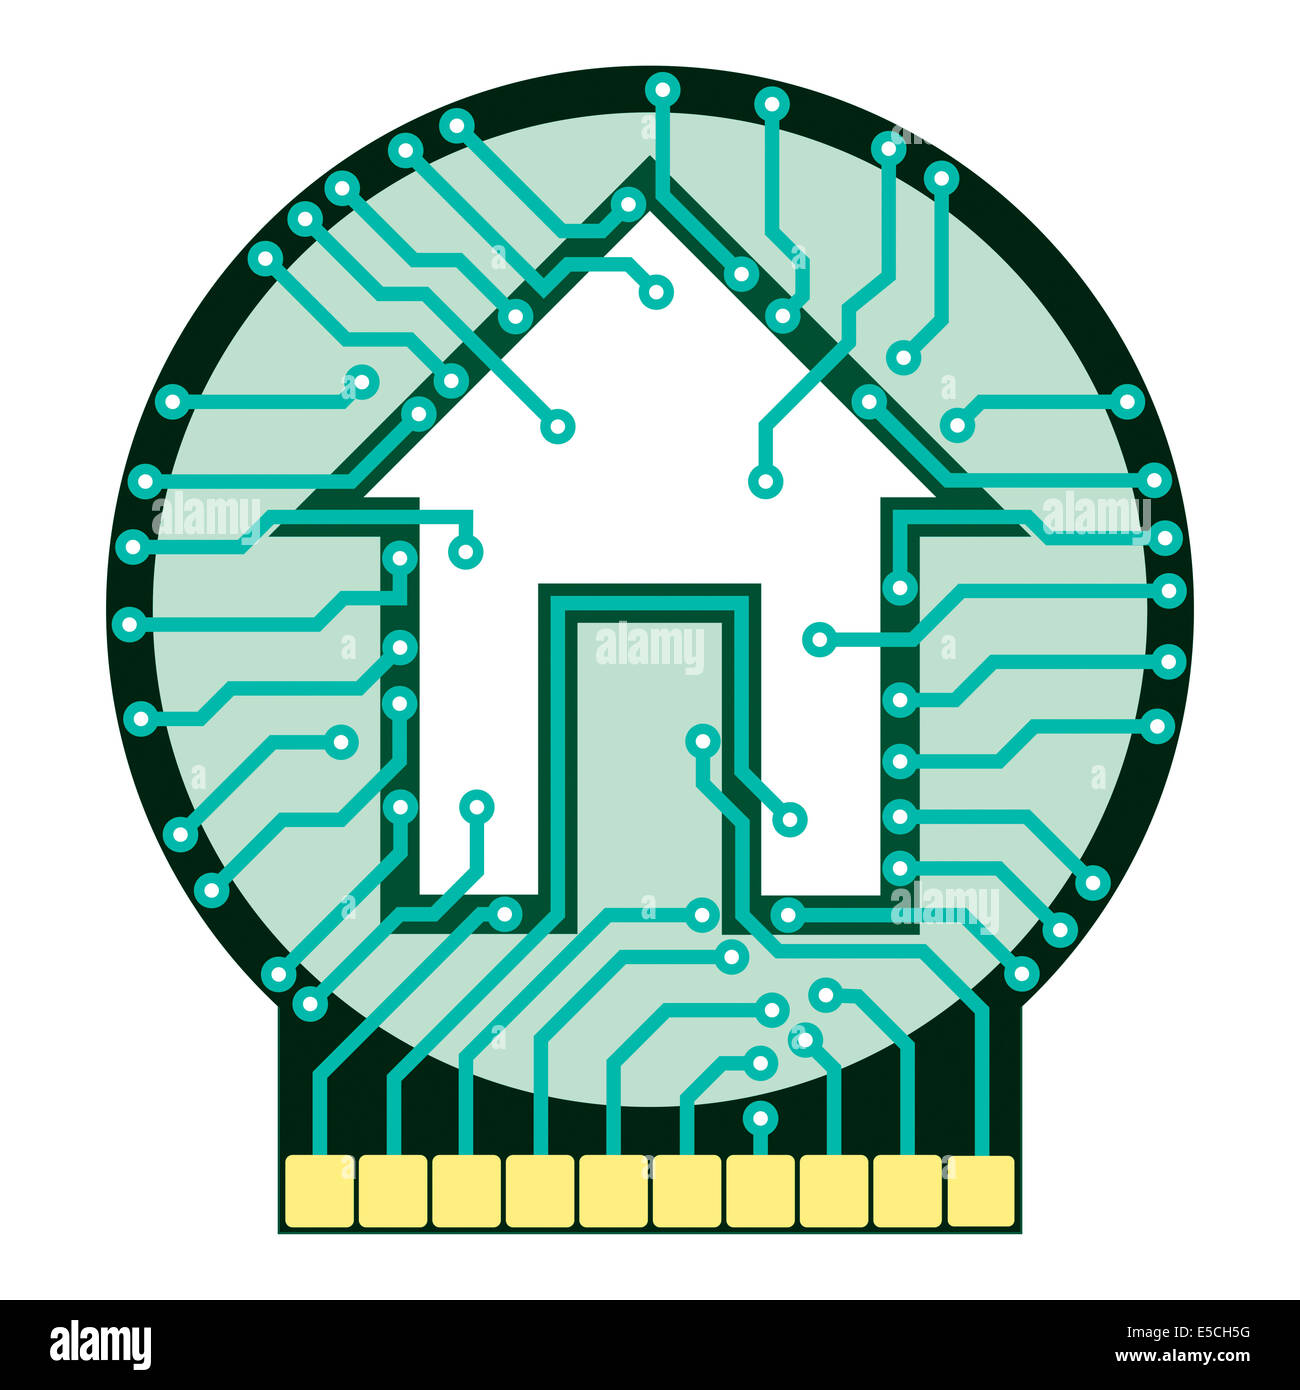 Símbolo de hogar conectado Ilustración conceptual. Placa de circuito con símbolo de casa aislado sobre fondo blanco. Ilustración vectorial Foto de stock